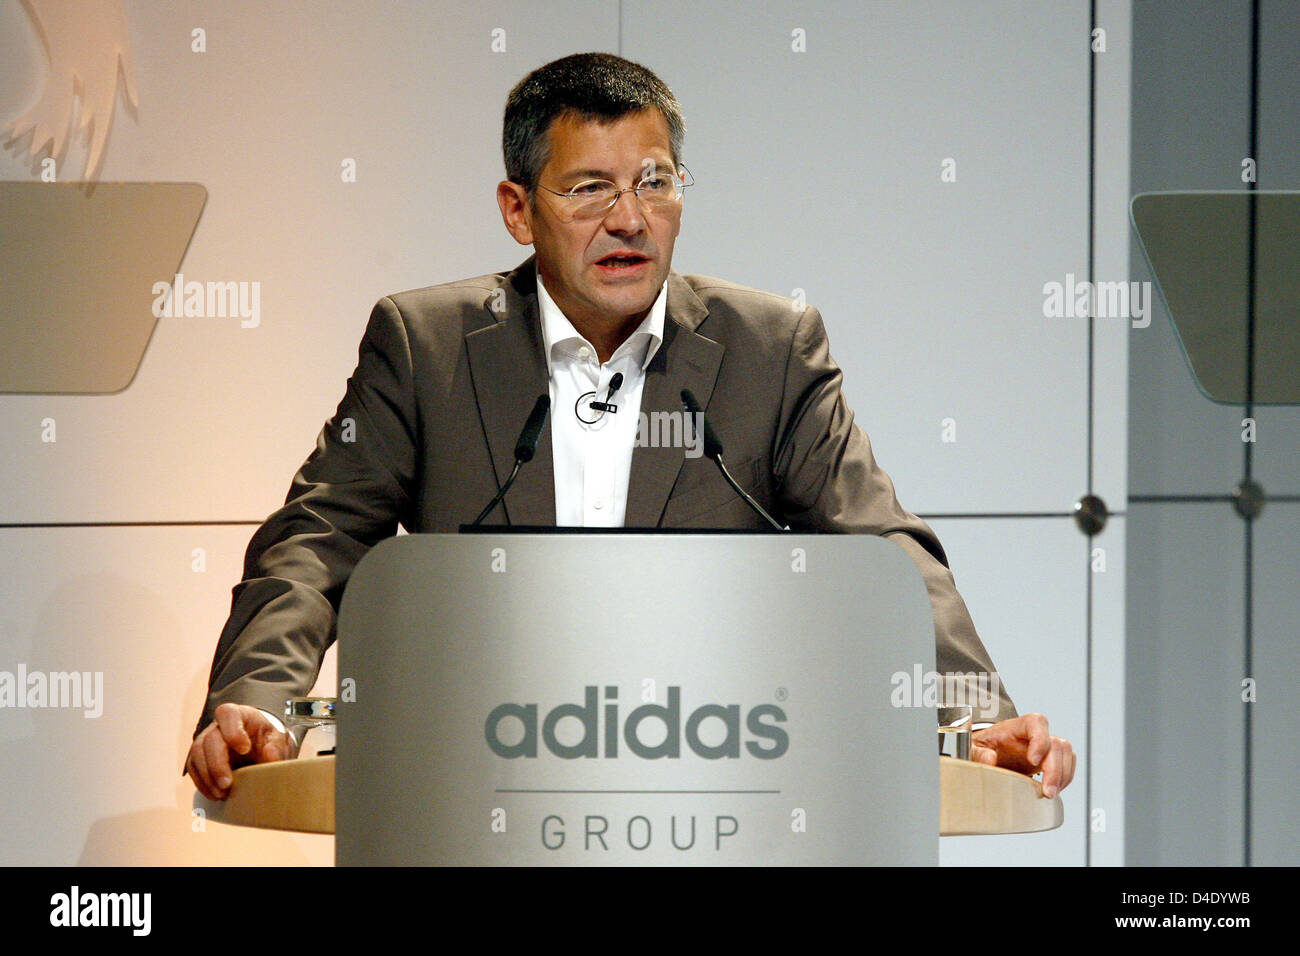 Adidas-CEO Herbert Hainer pronuncia un discurso en la reunión general de la  empresa en Fürth, Alemania, 08 de mayo de 2008. Hainer confirmó su objetivo  para hacer que la marca alemana líder